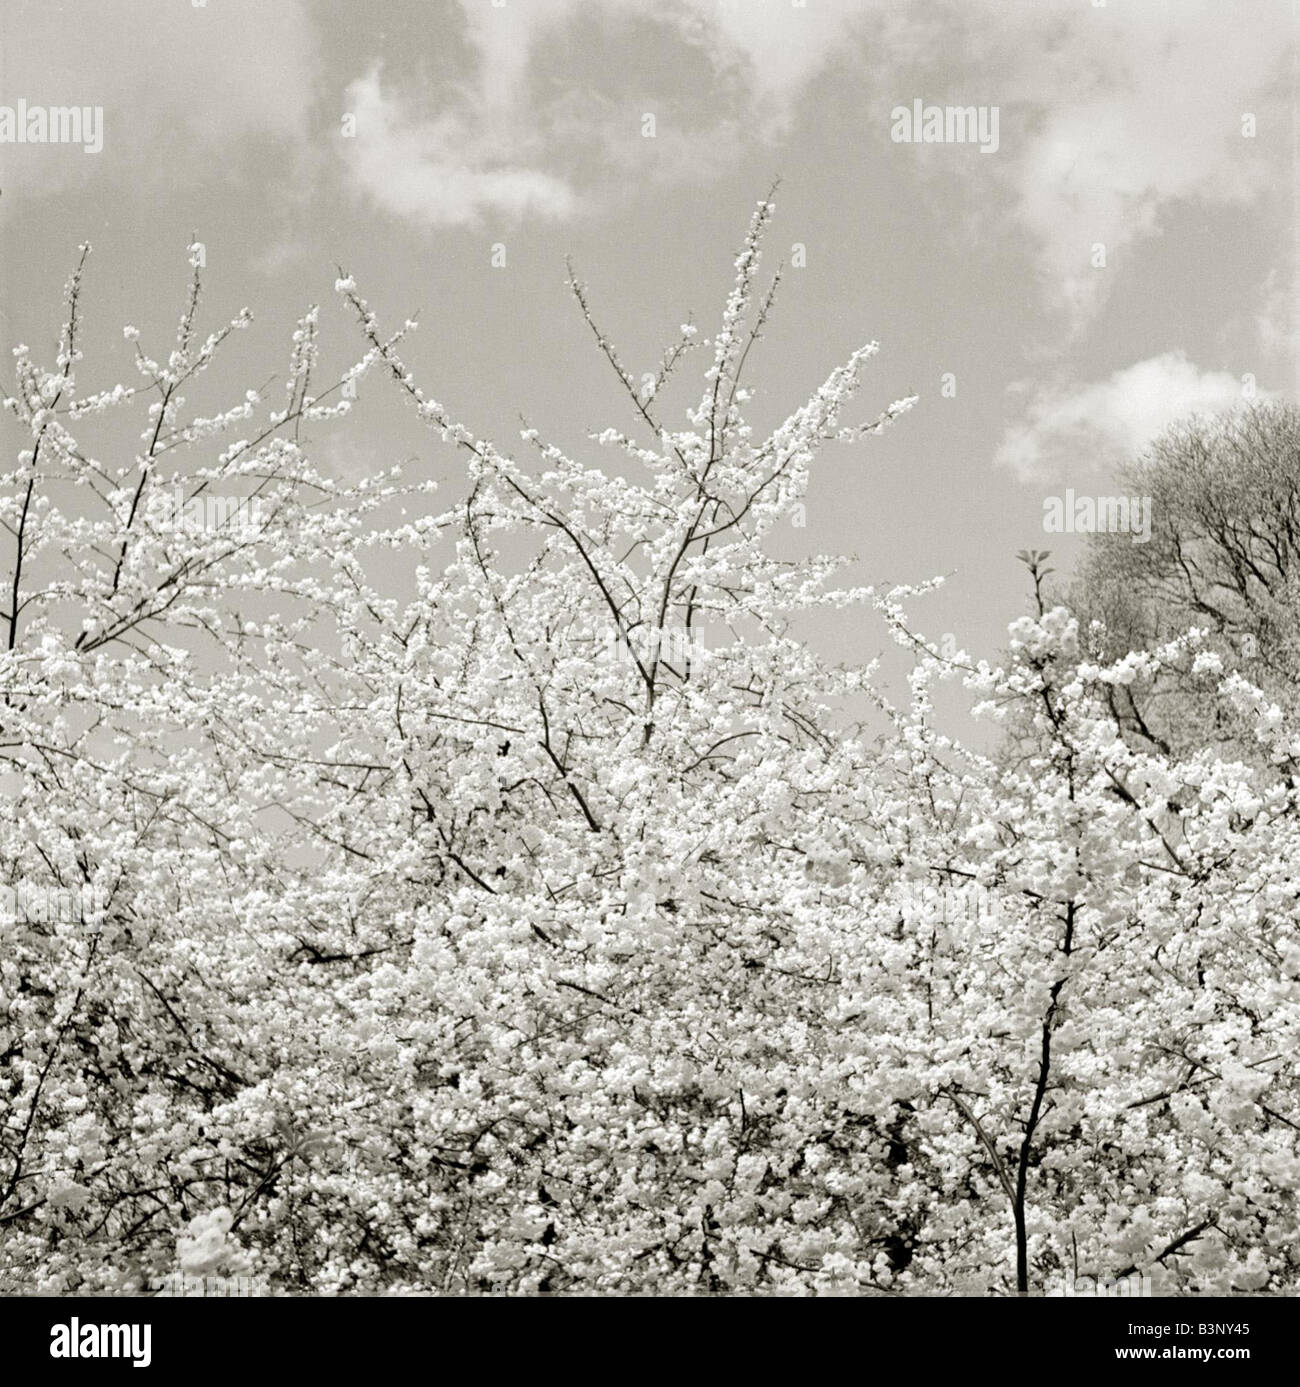 Alberi in fiore rami sventolando nella brezza primaverile soffici couds bianco nel cielo piuttosto tranquillo scenario tranquillo data sconosciuta Foto Stock